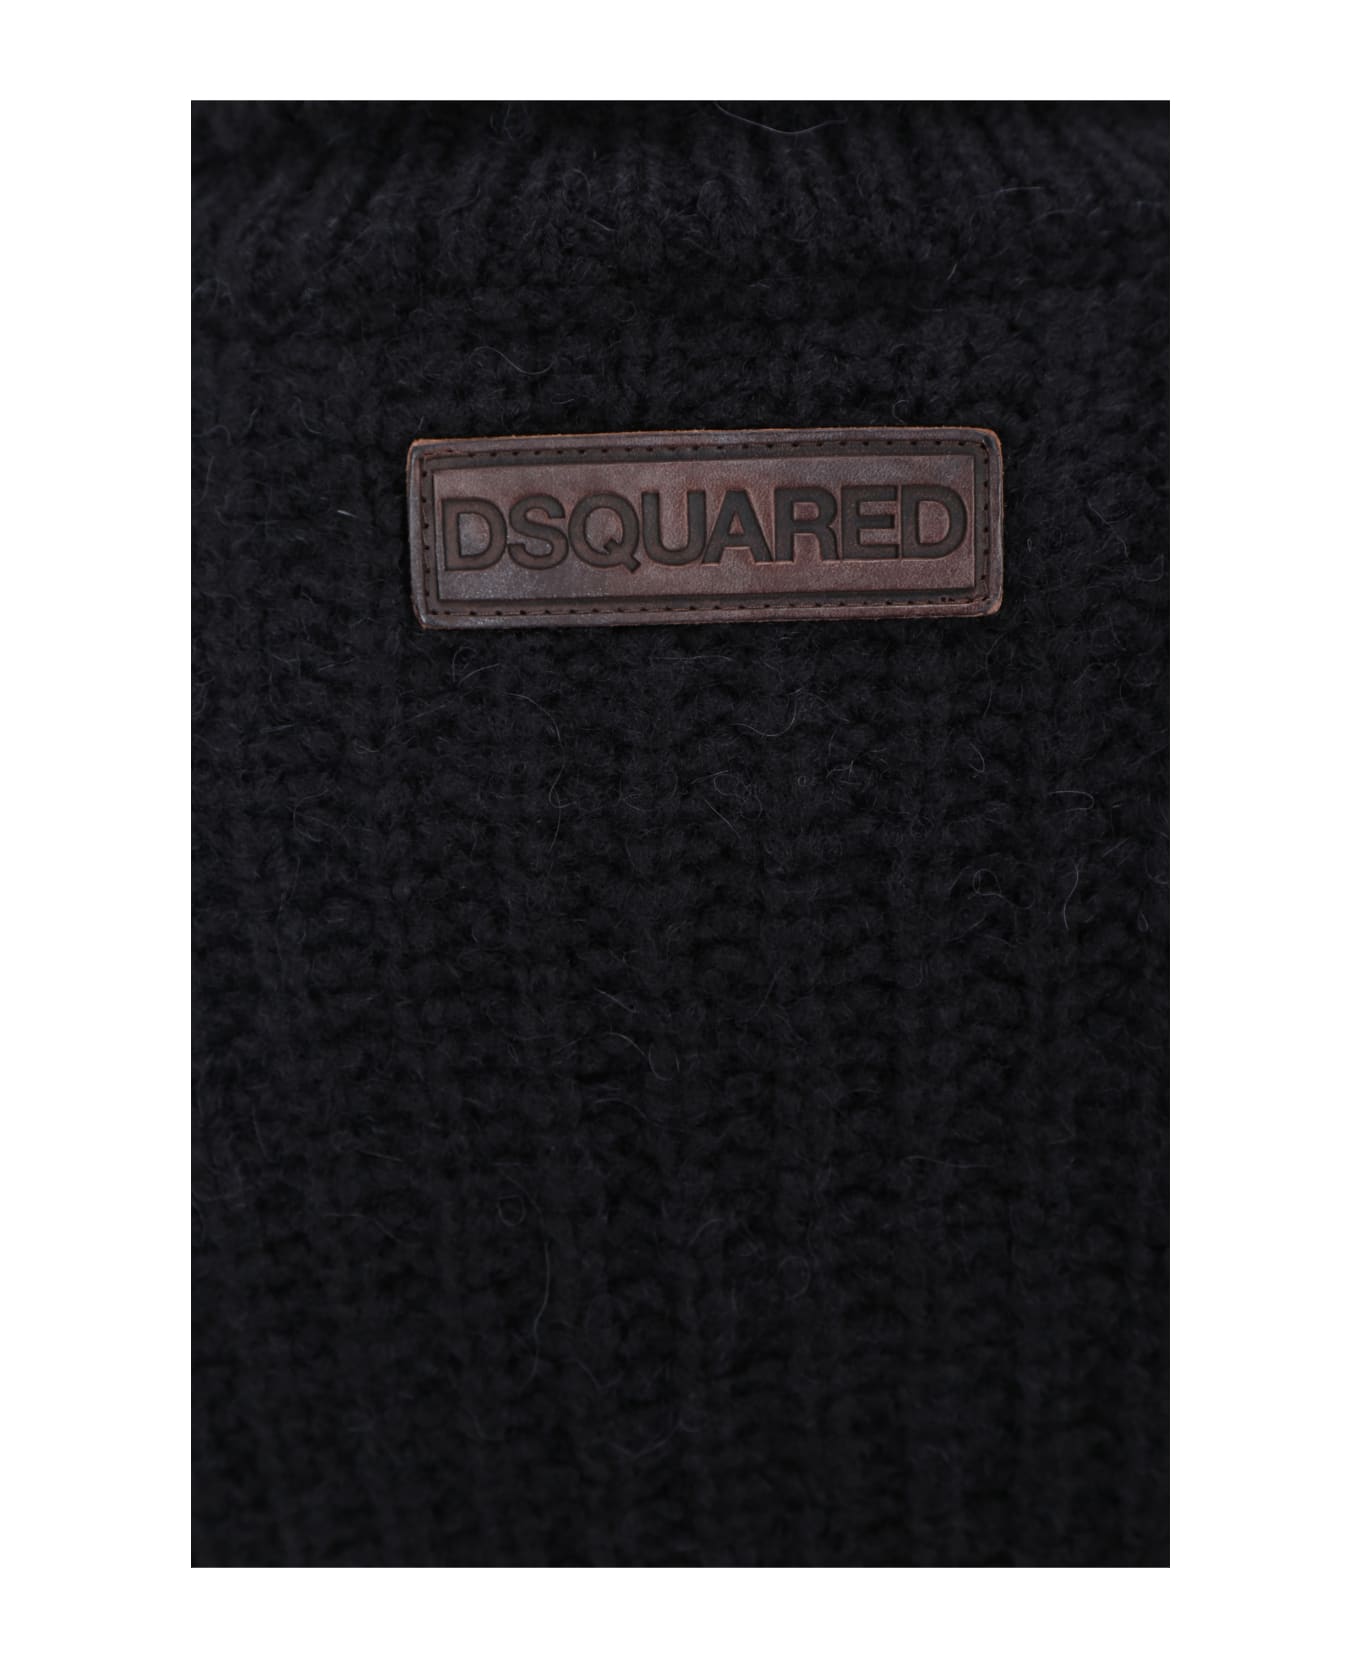 Dsquared2 Sweater - 900 ニットウェア